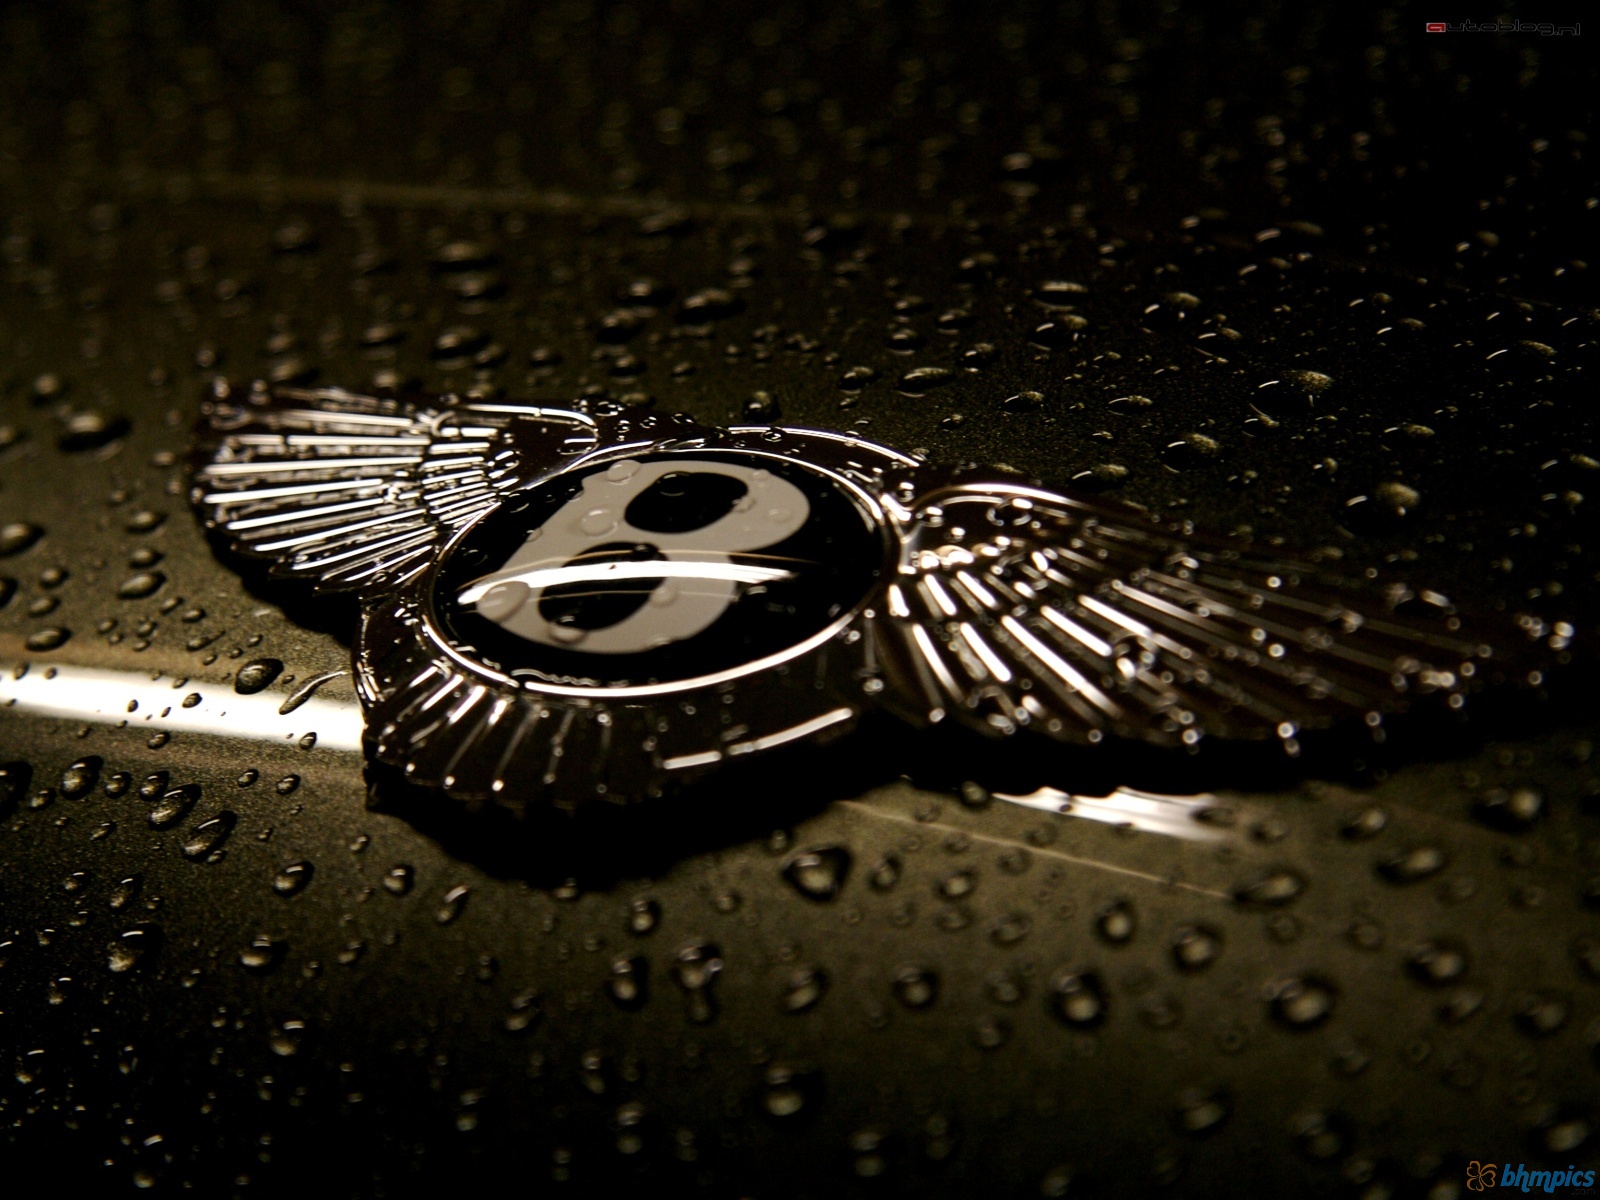 Bentley Logo Wallpaper Pictures Image